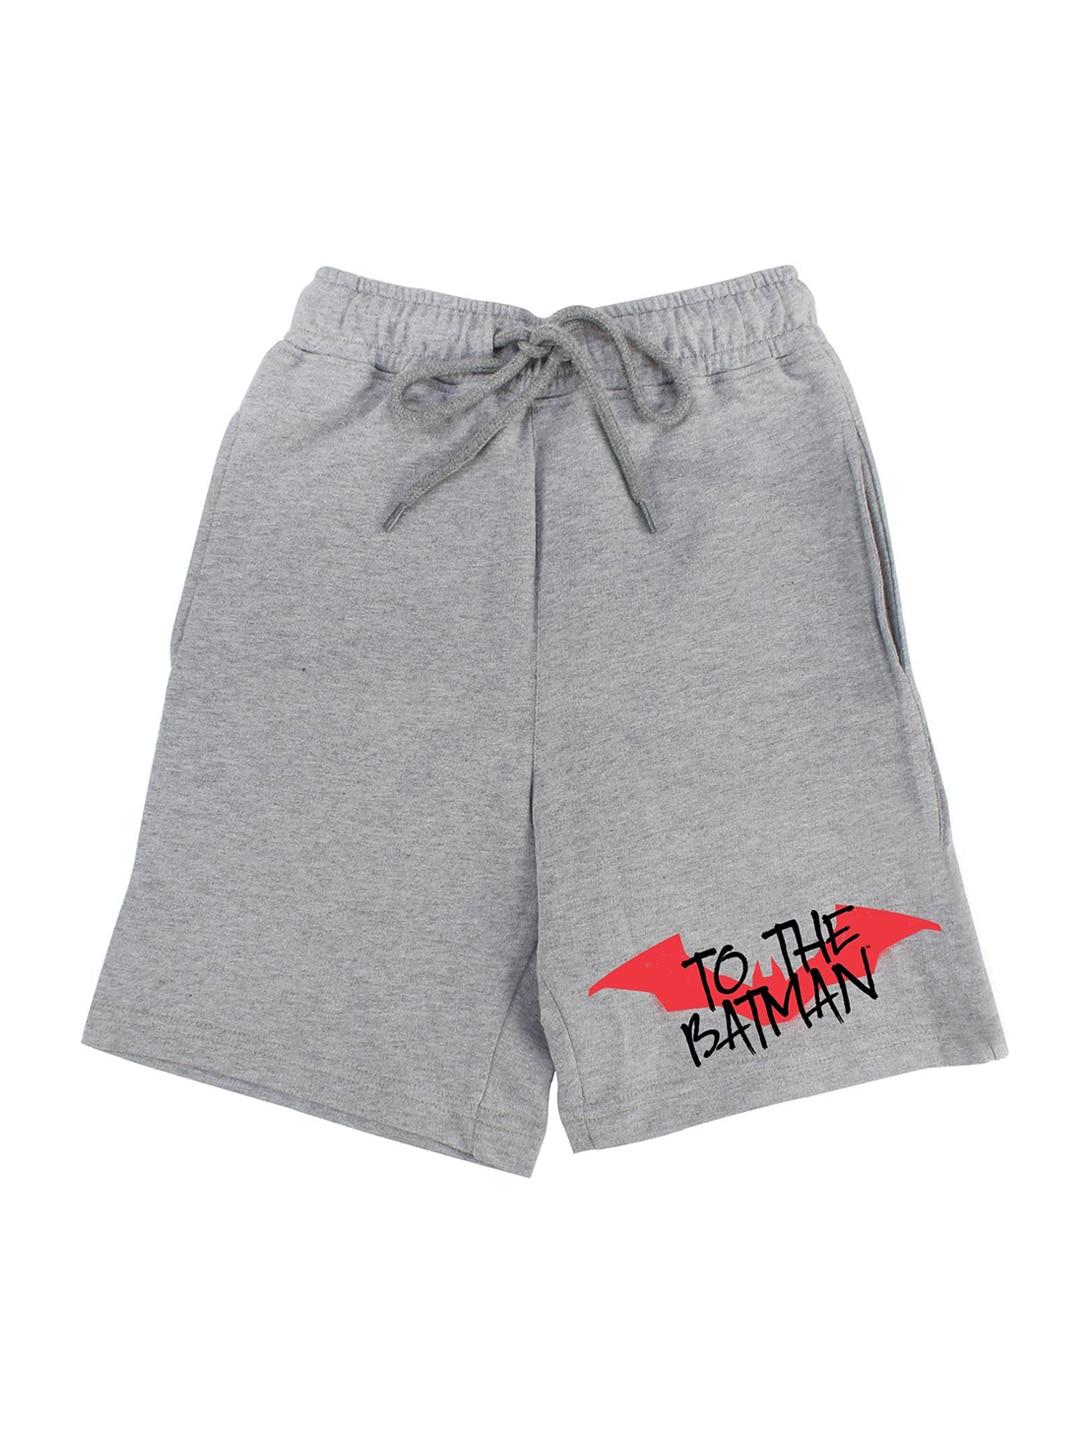 dc-by-wear-your-mind-boys-grey-printed-batman-shorts